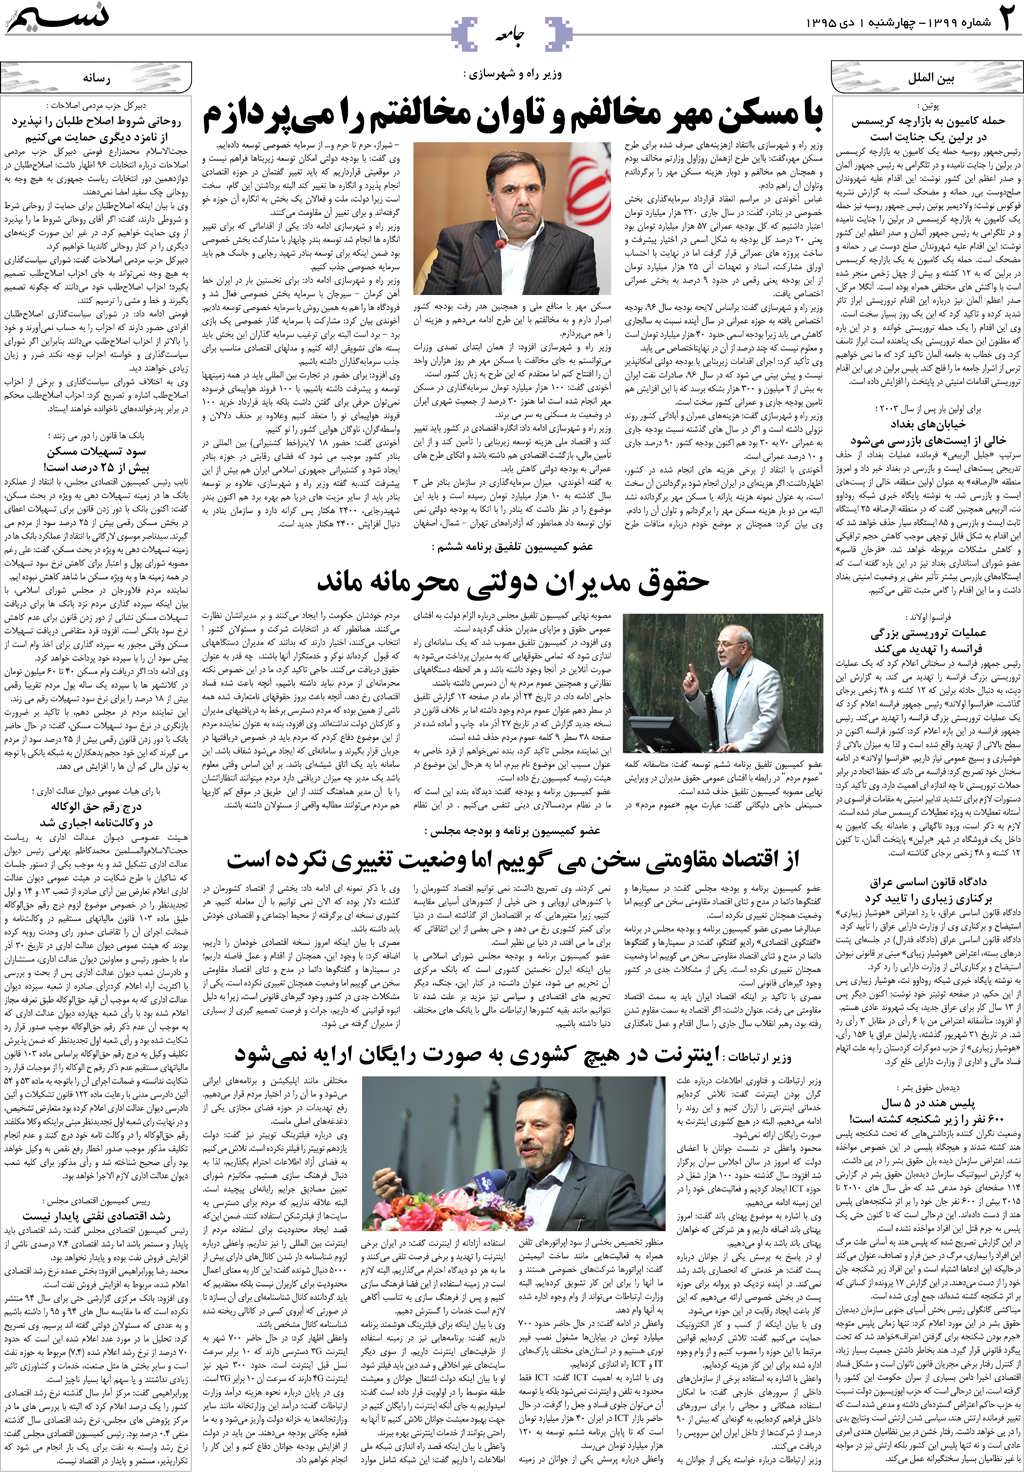 صفحه جامعه روزنامه نسیم شماره 1399